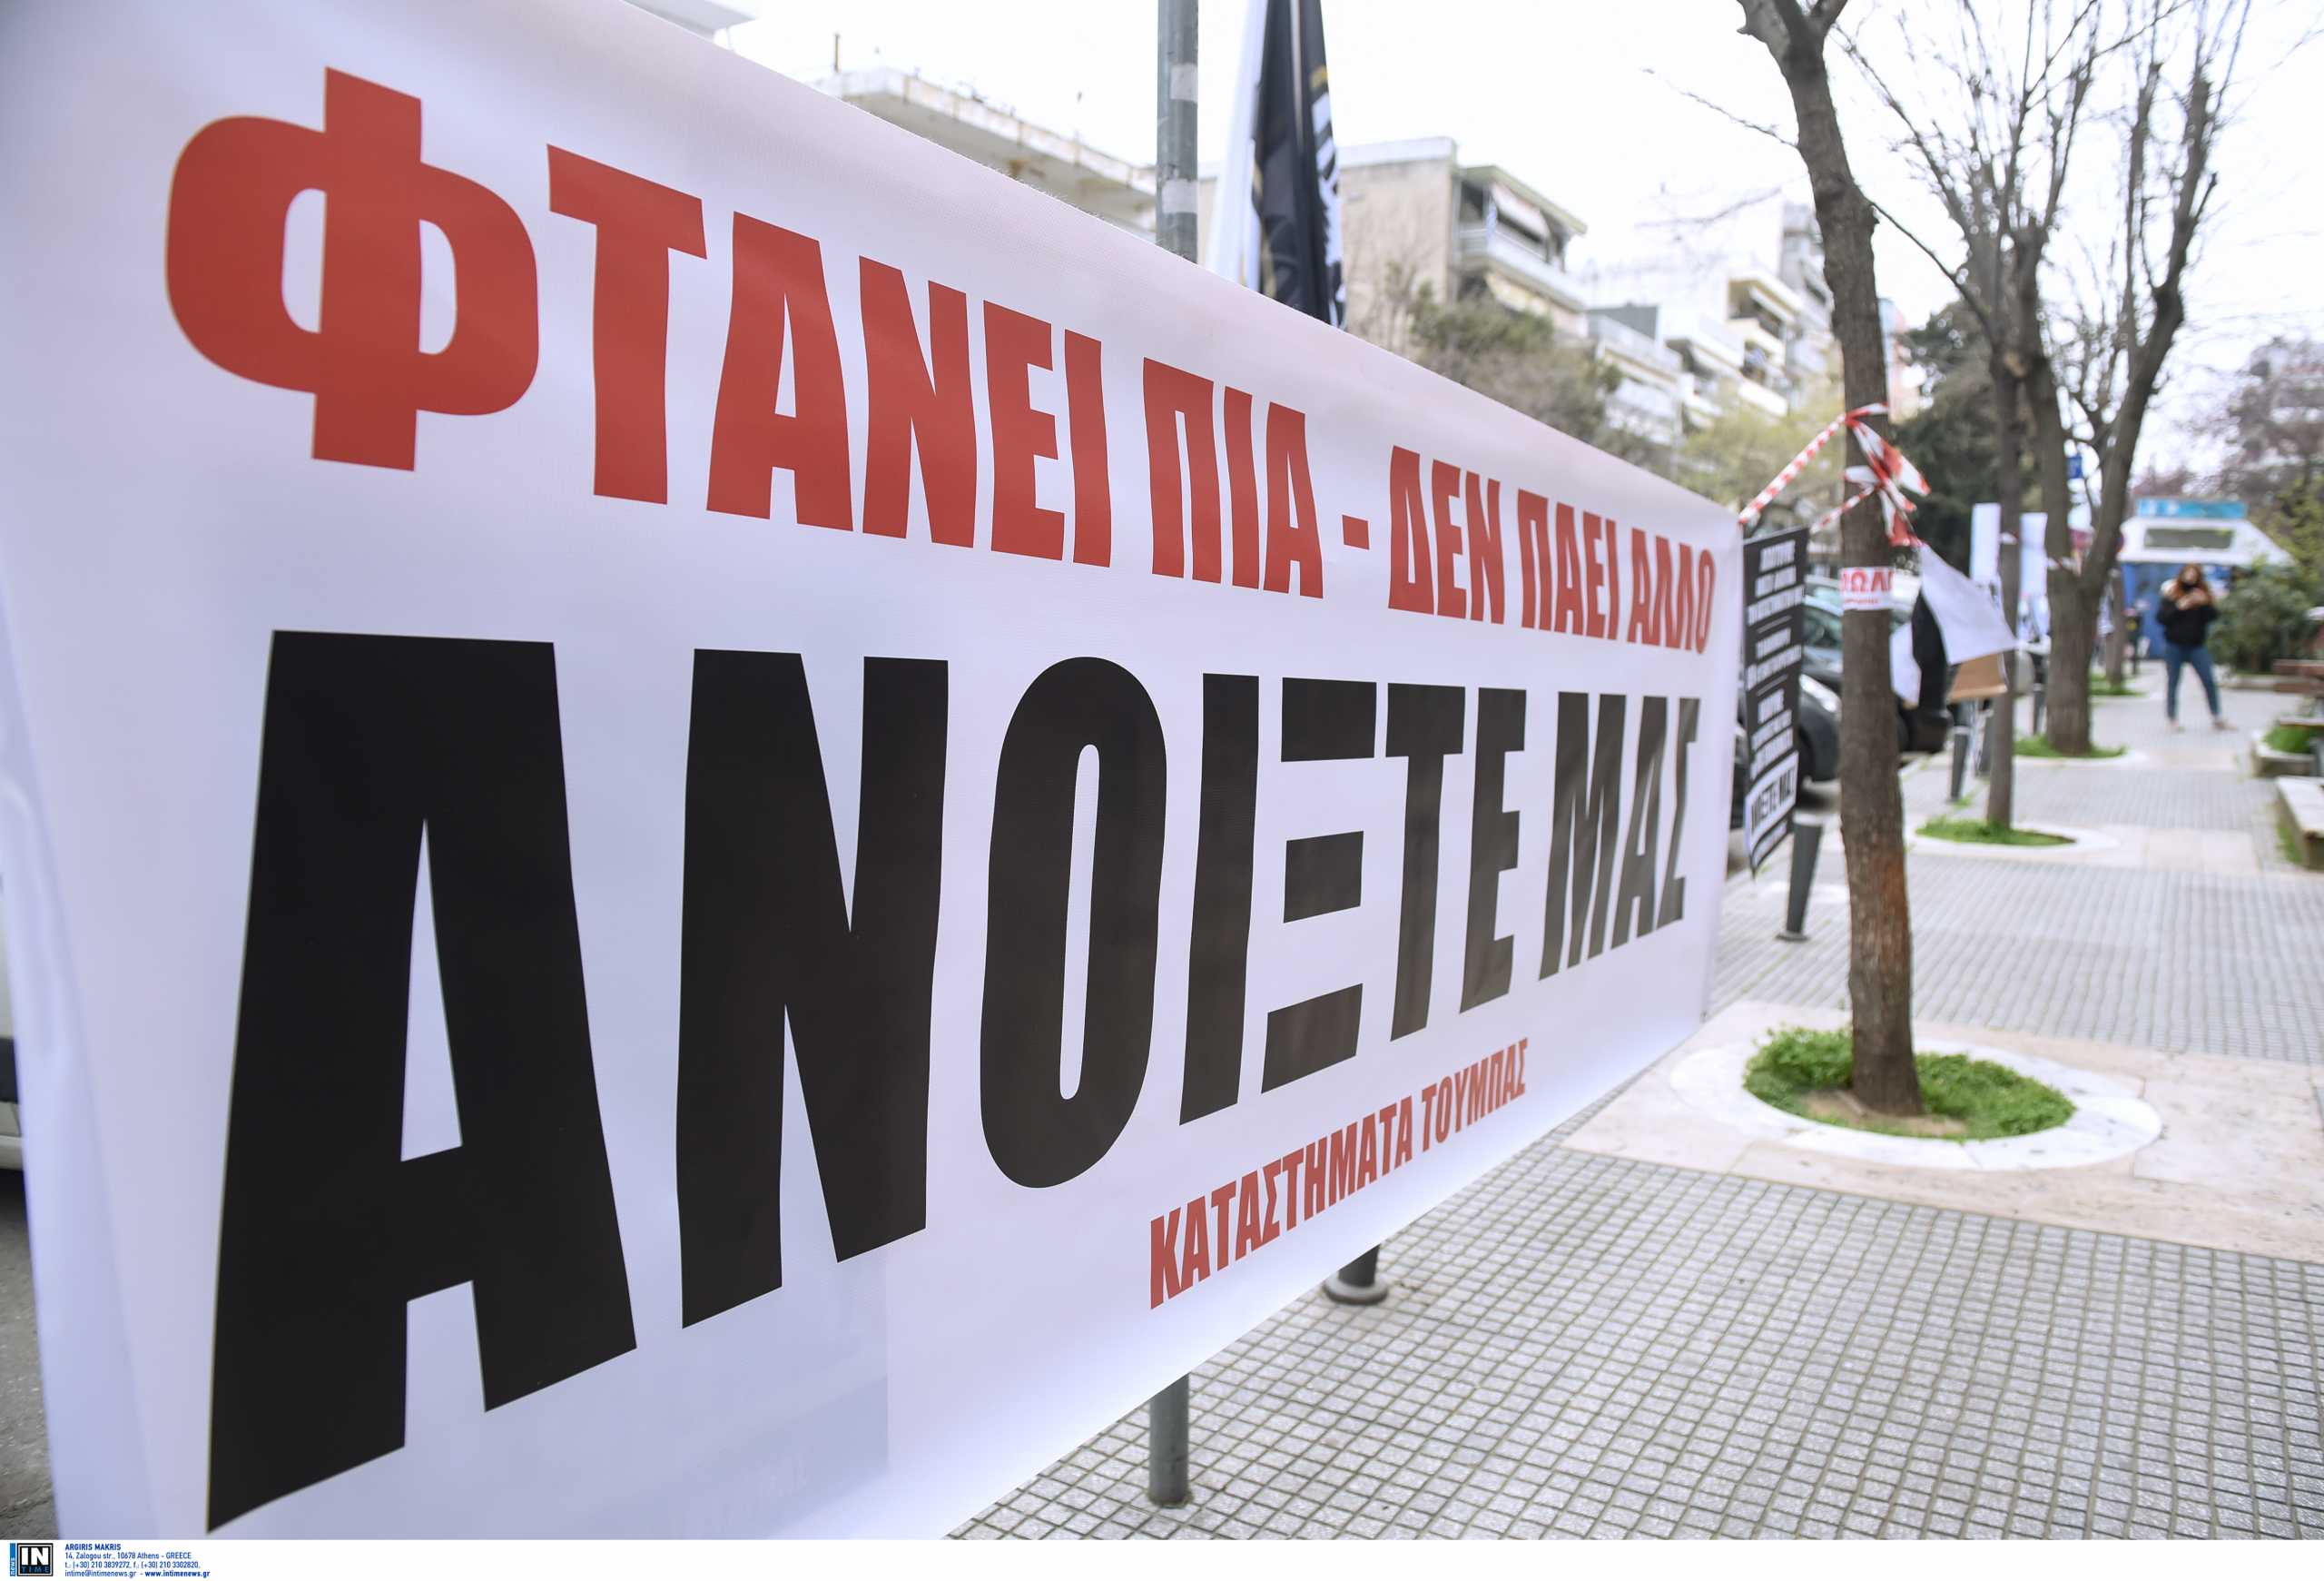 Θεσσαλονίκη: Εμπορικός Σύλλογος προς λοιμωξιολόγους – Στις αποφάσεις σας να συνυπολογιστεί η καταστροφή του λιανεμπορίου